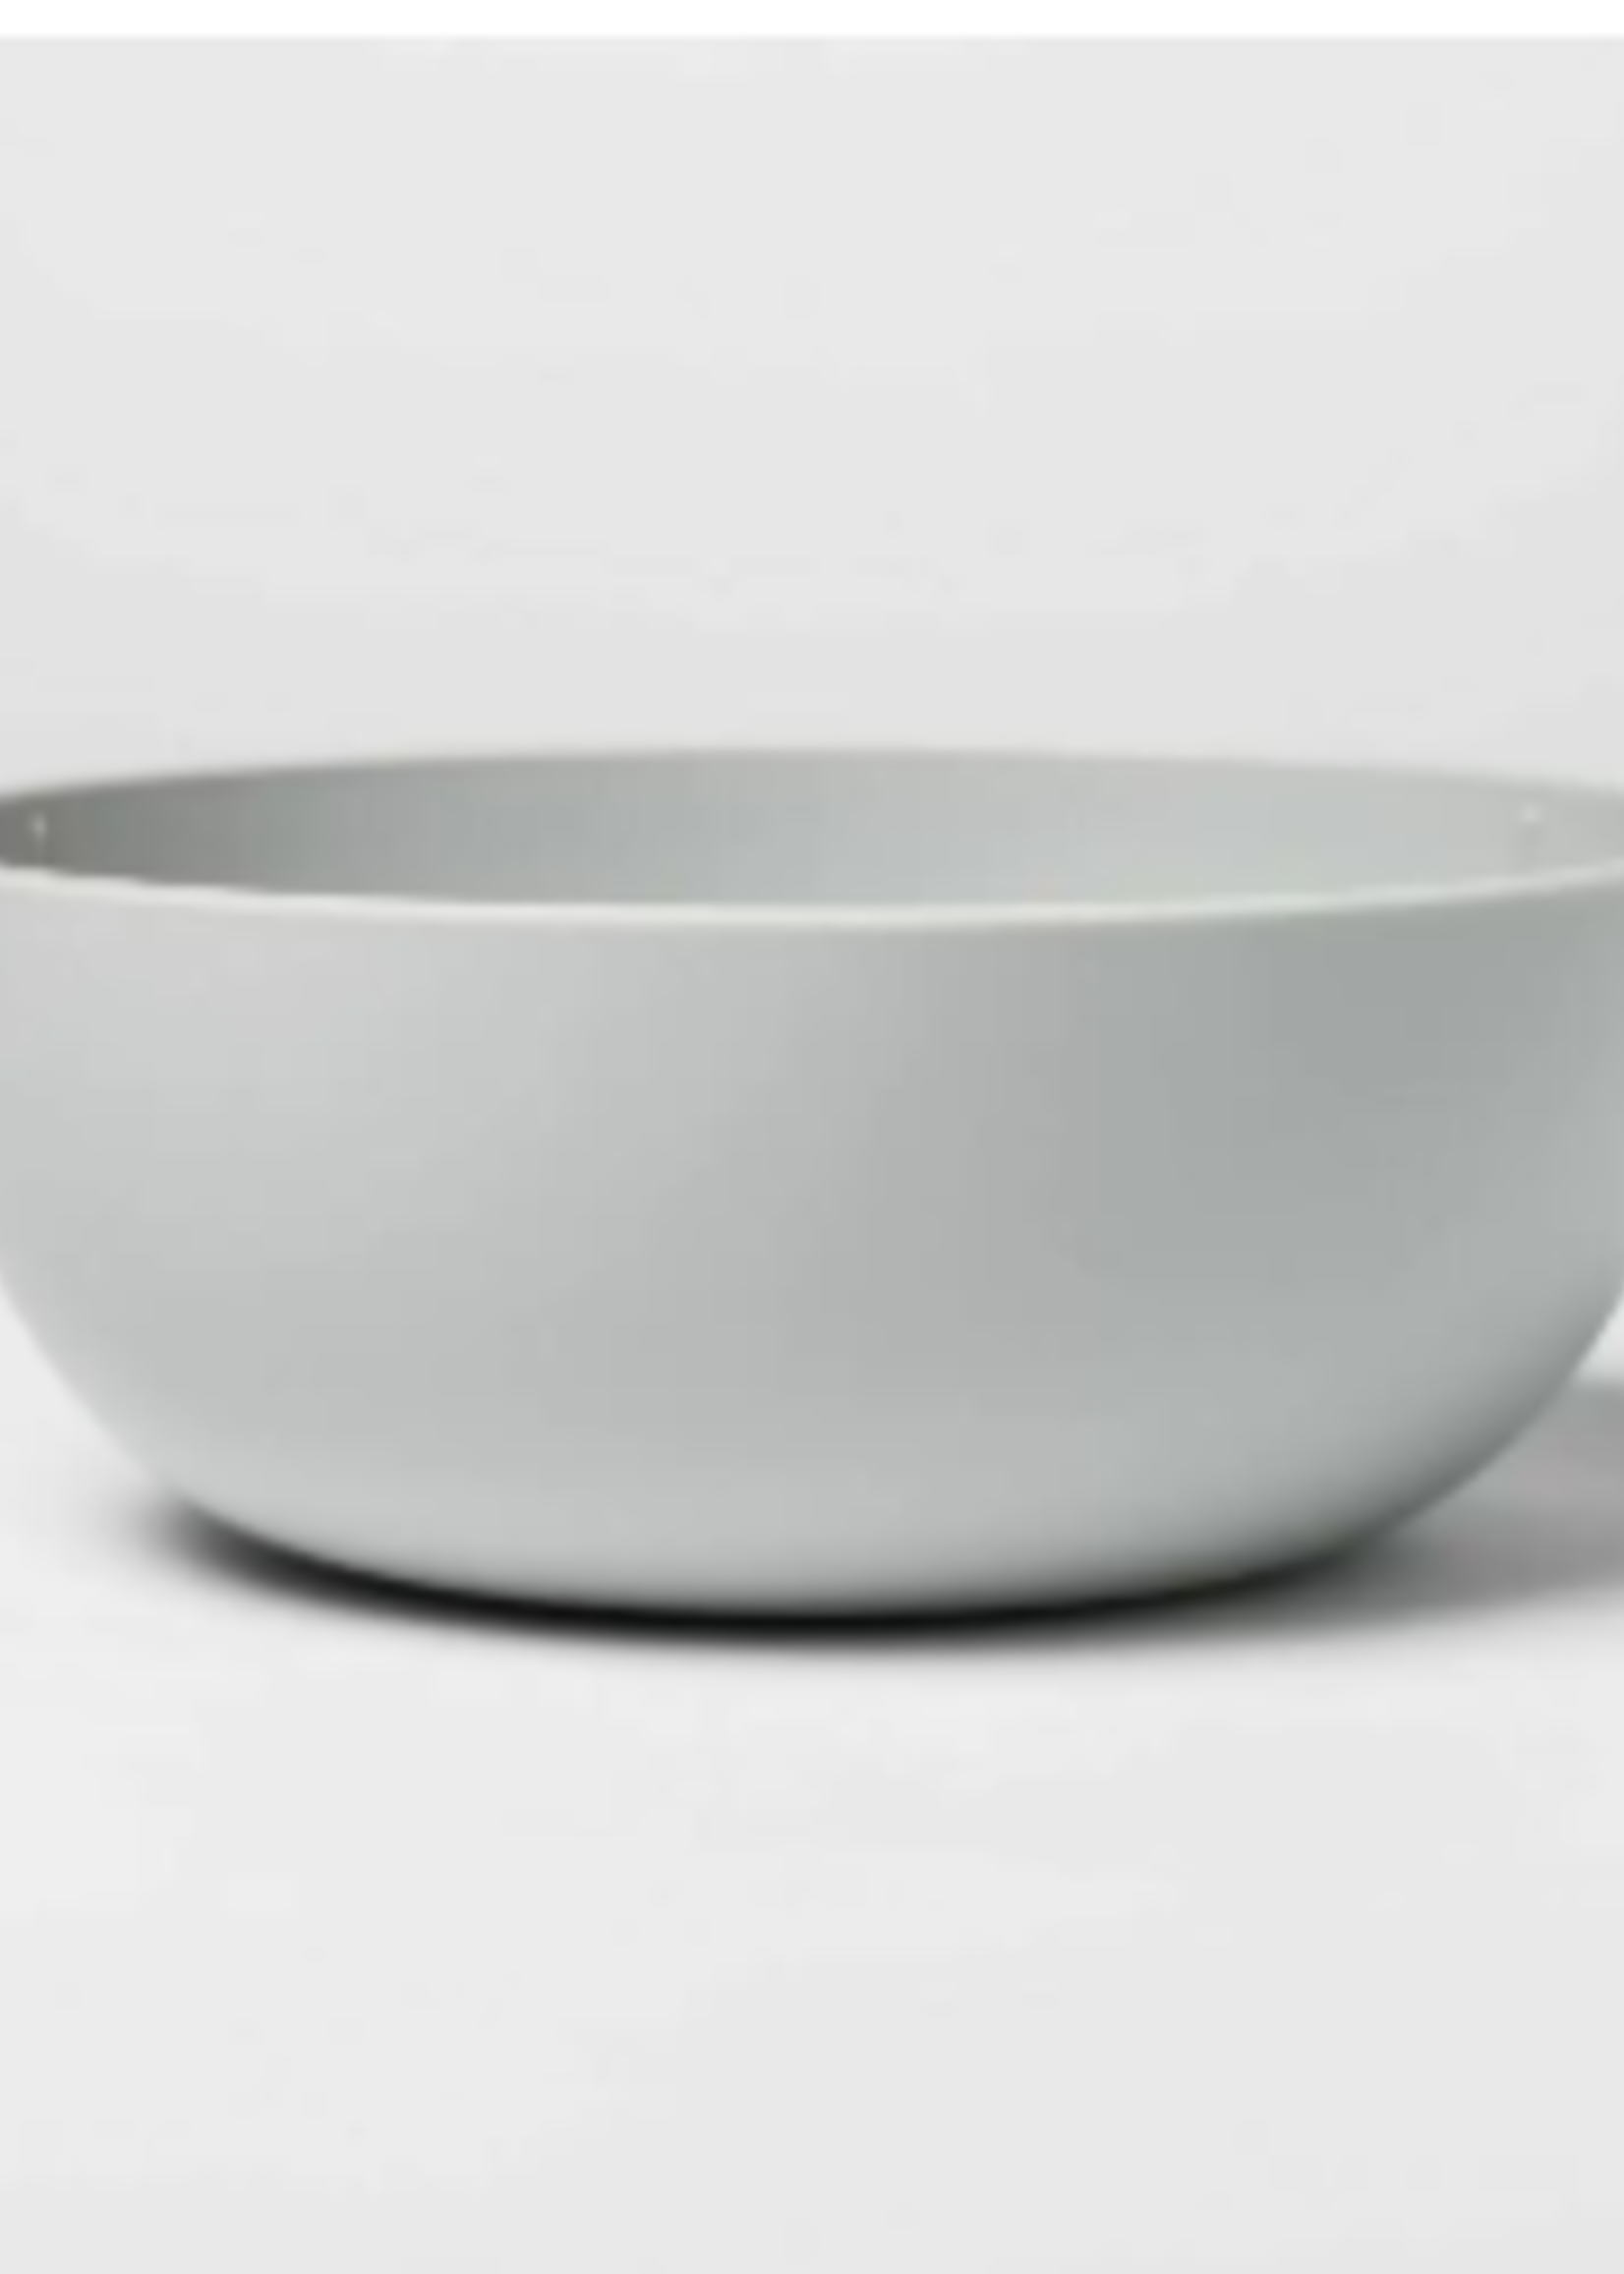 37oz lastic 37oz Plastic Cereal Bowl Gray - Room Essentials